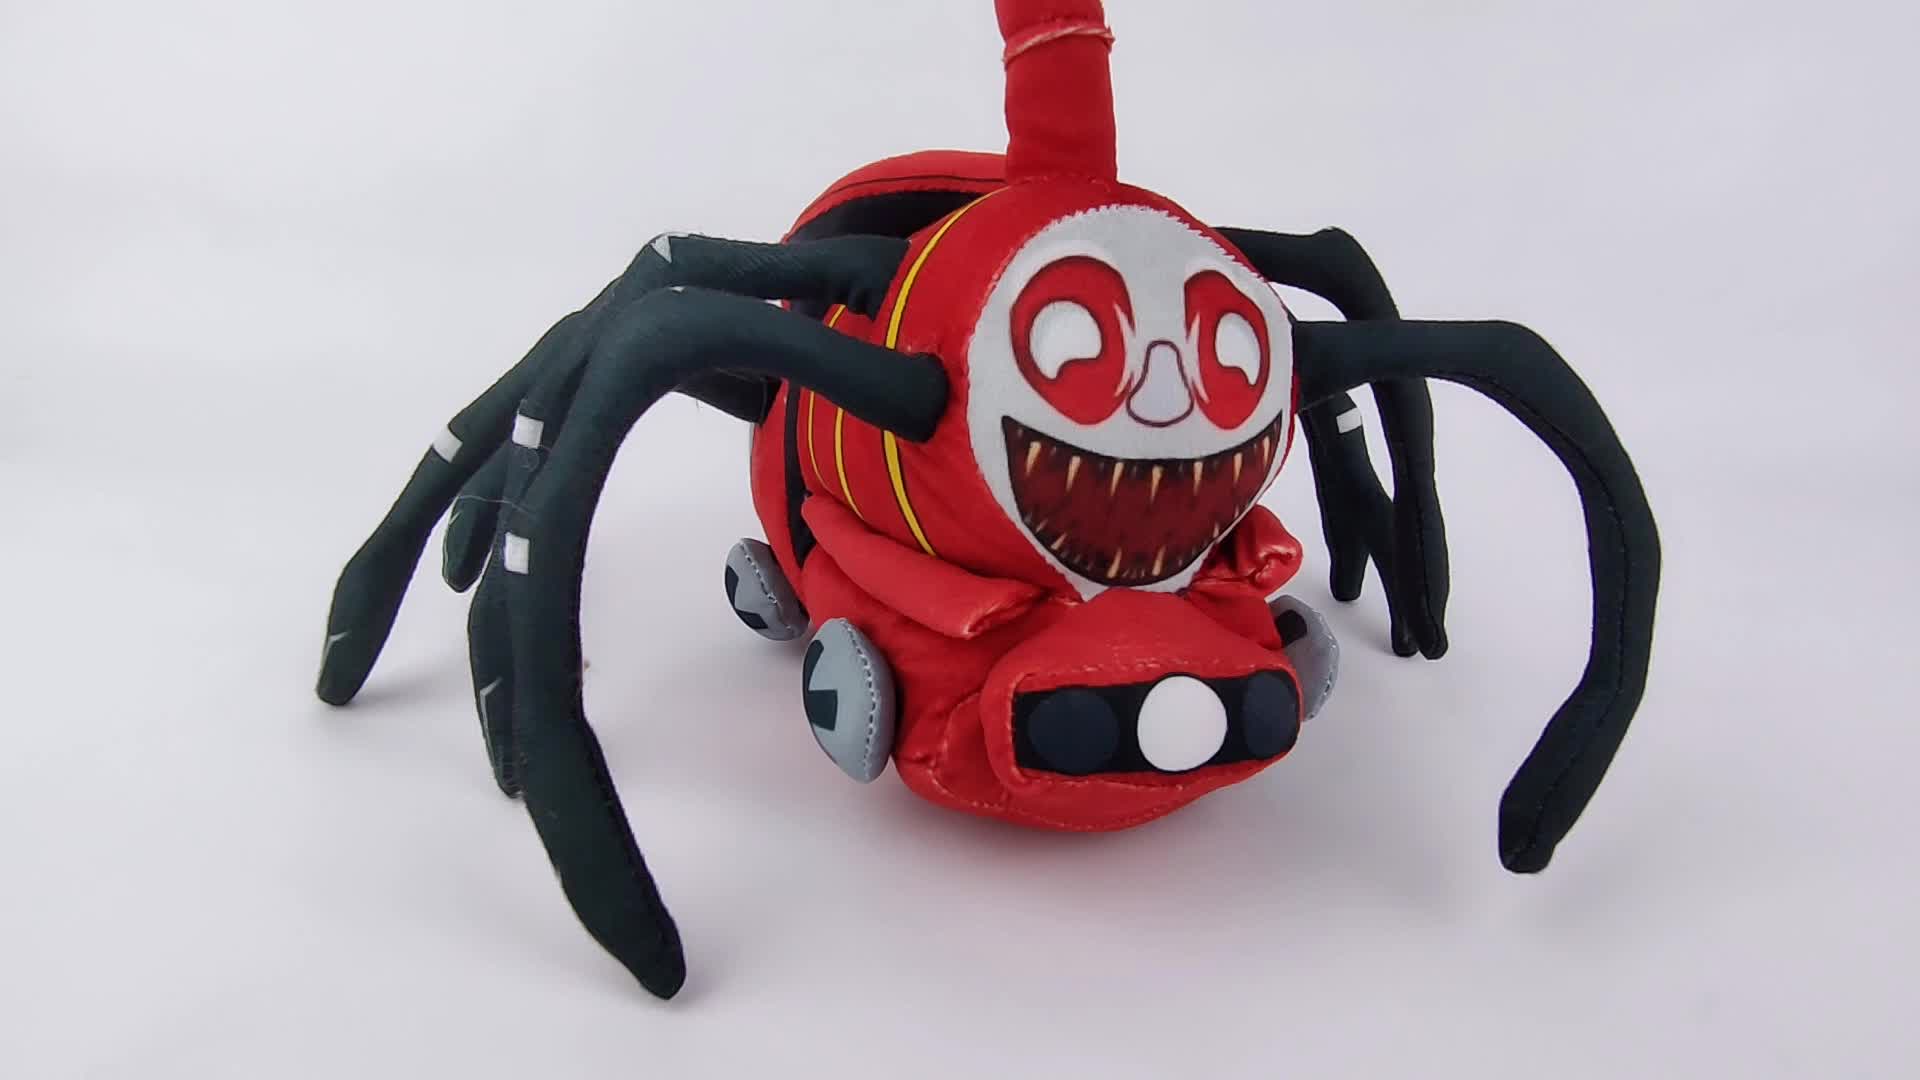 New Choo-Choo Charles Plush Toy Horror Game Figure Stuffed Doll